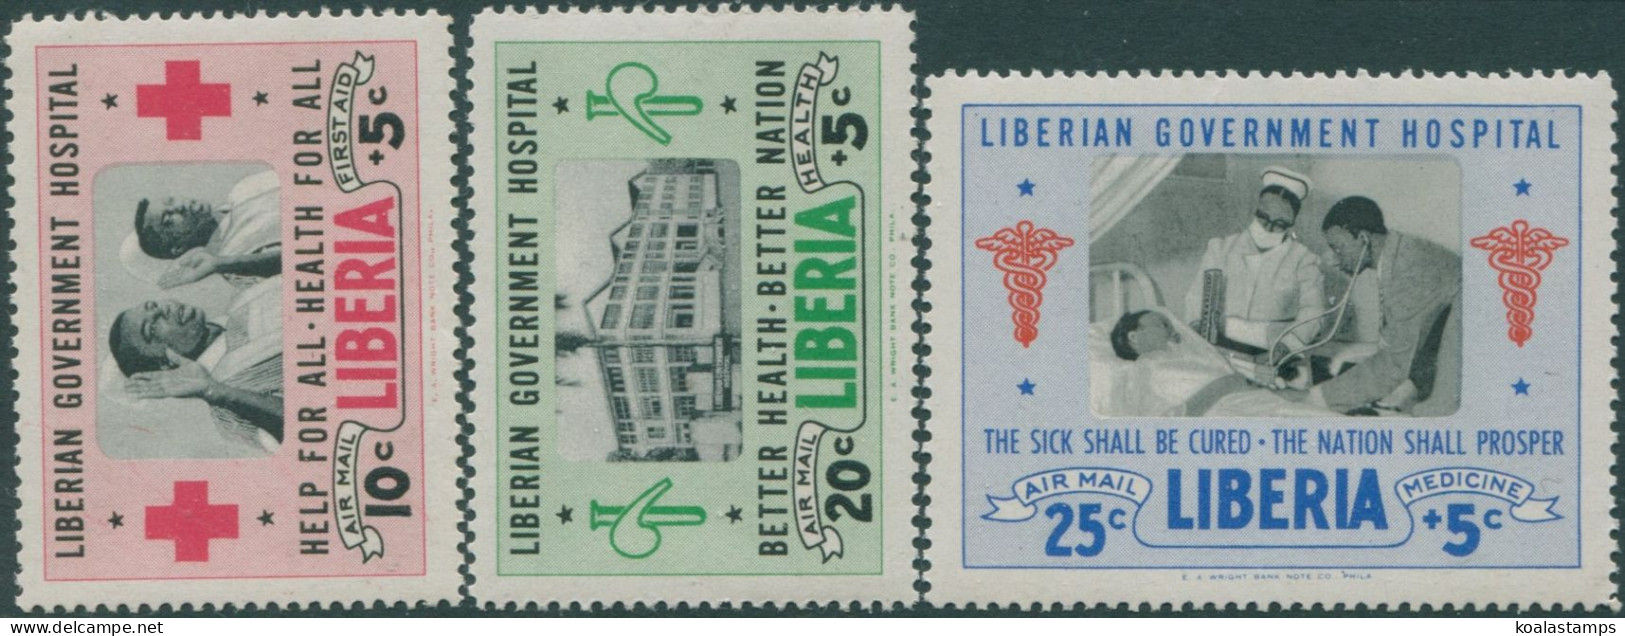 Liberia 1954 SG742-744 Hospital Fund MNH - Liberia